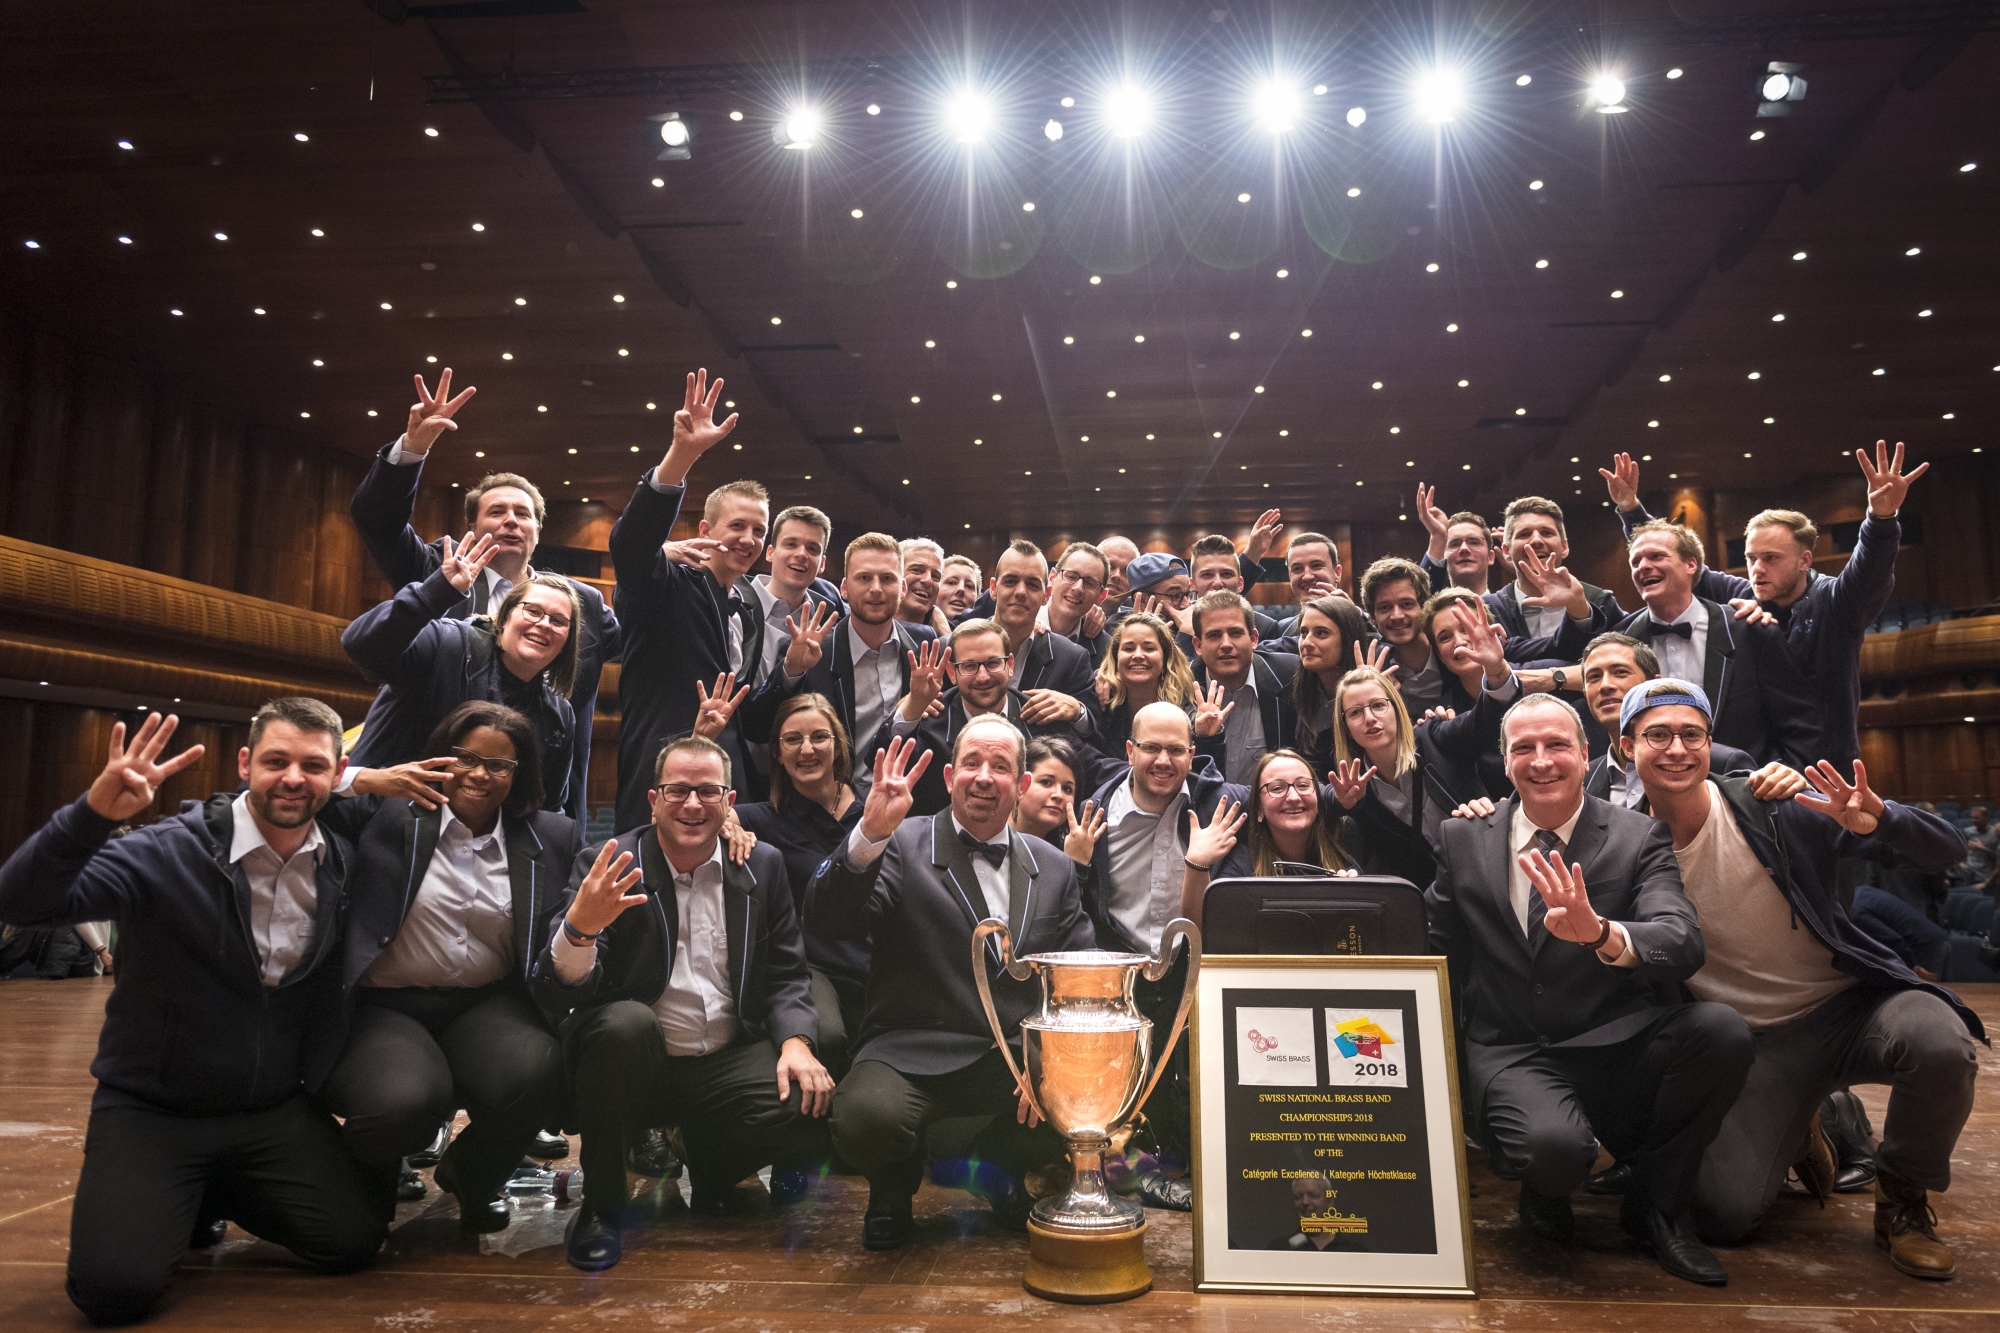 Le quatrième titre consécutif de champion suisse remporté le 25 novembre dernier à Montreux a permis au Valaisia Brass Band de conclure en beauté une année 2018 exceptionnelle.